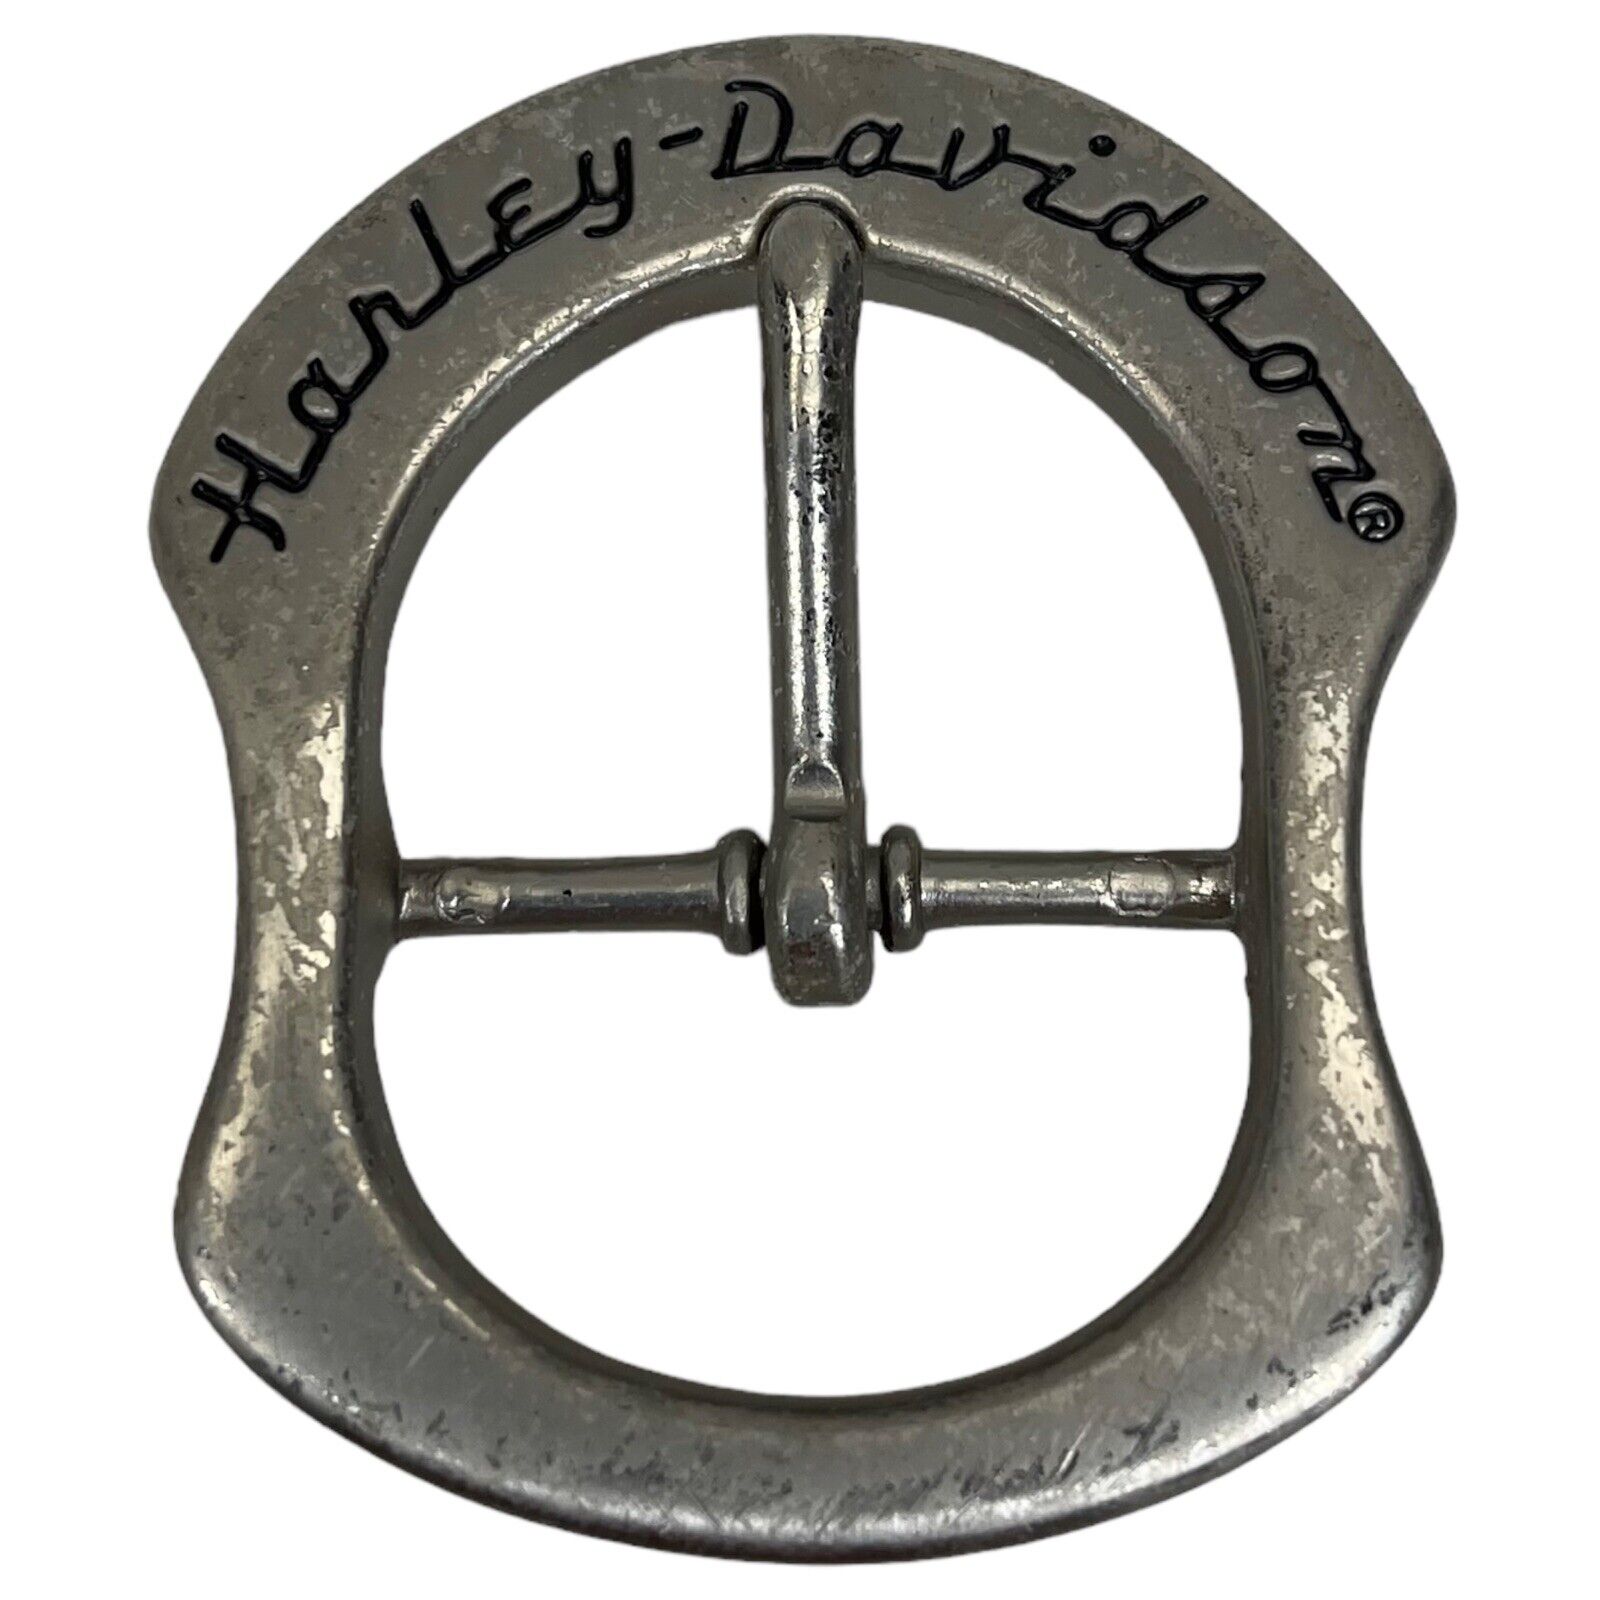 Harley Davidson Silver Belt Buckle Vintage